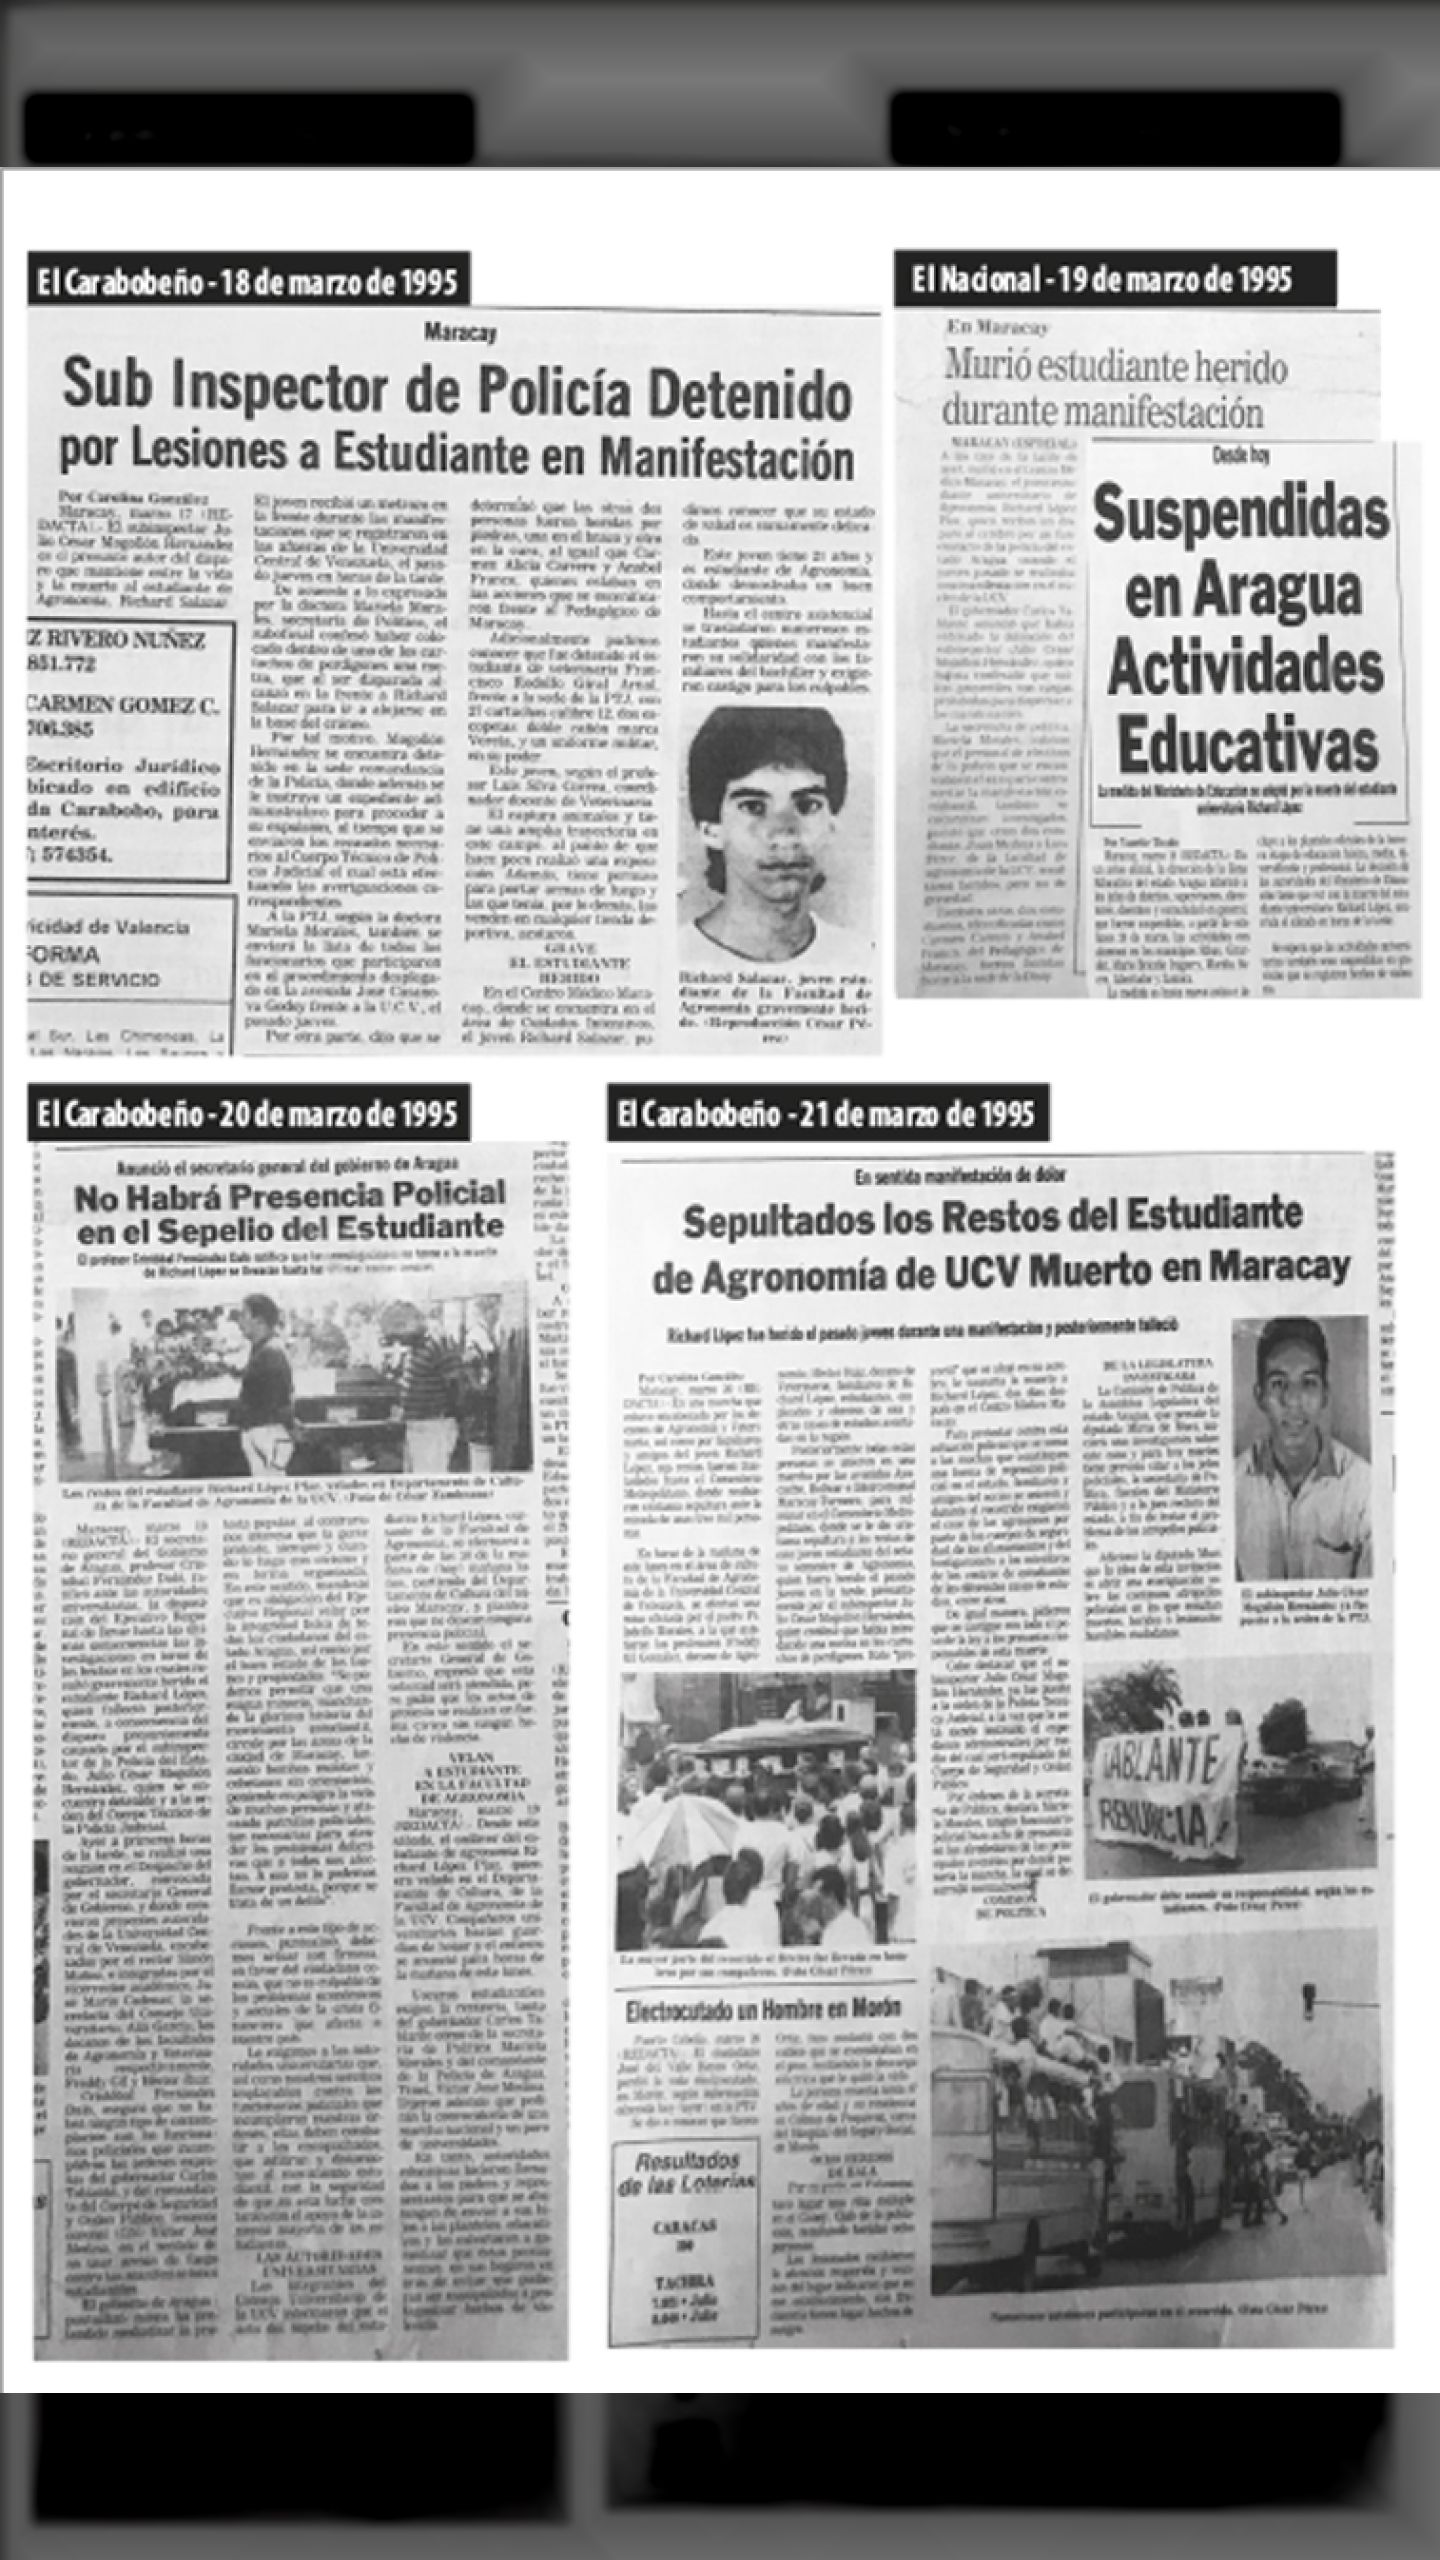 ASESINADO RICHARD LÓPEZ PLAZ (El Carabobeño, 18-19-20-21 de marzo 1995)